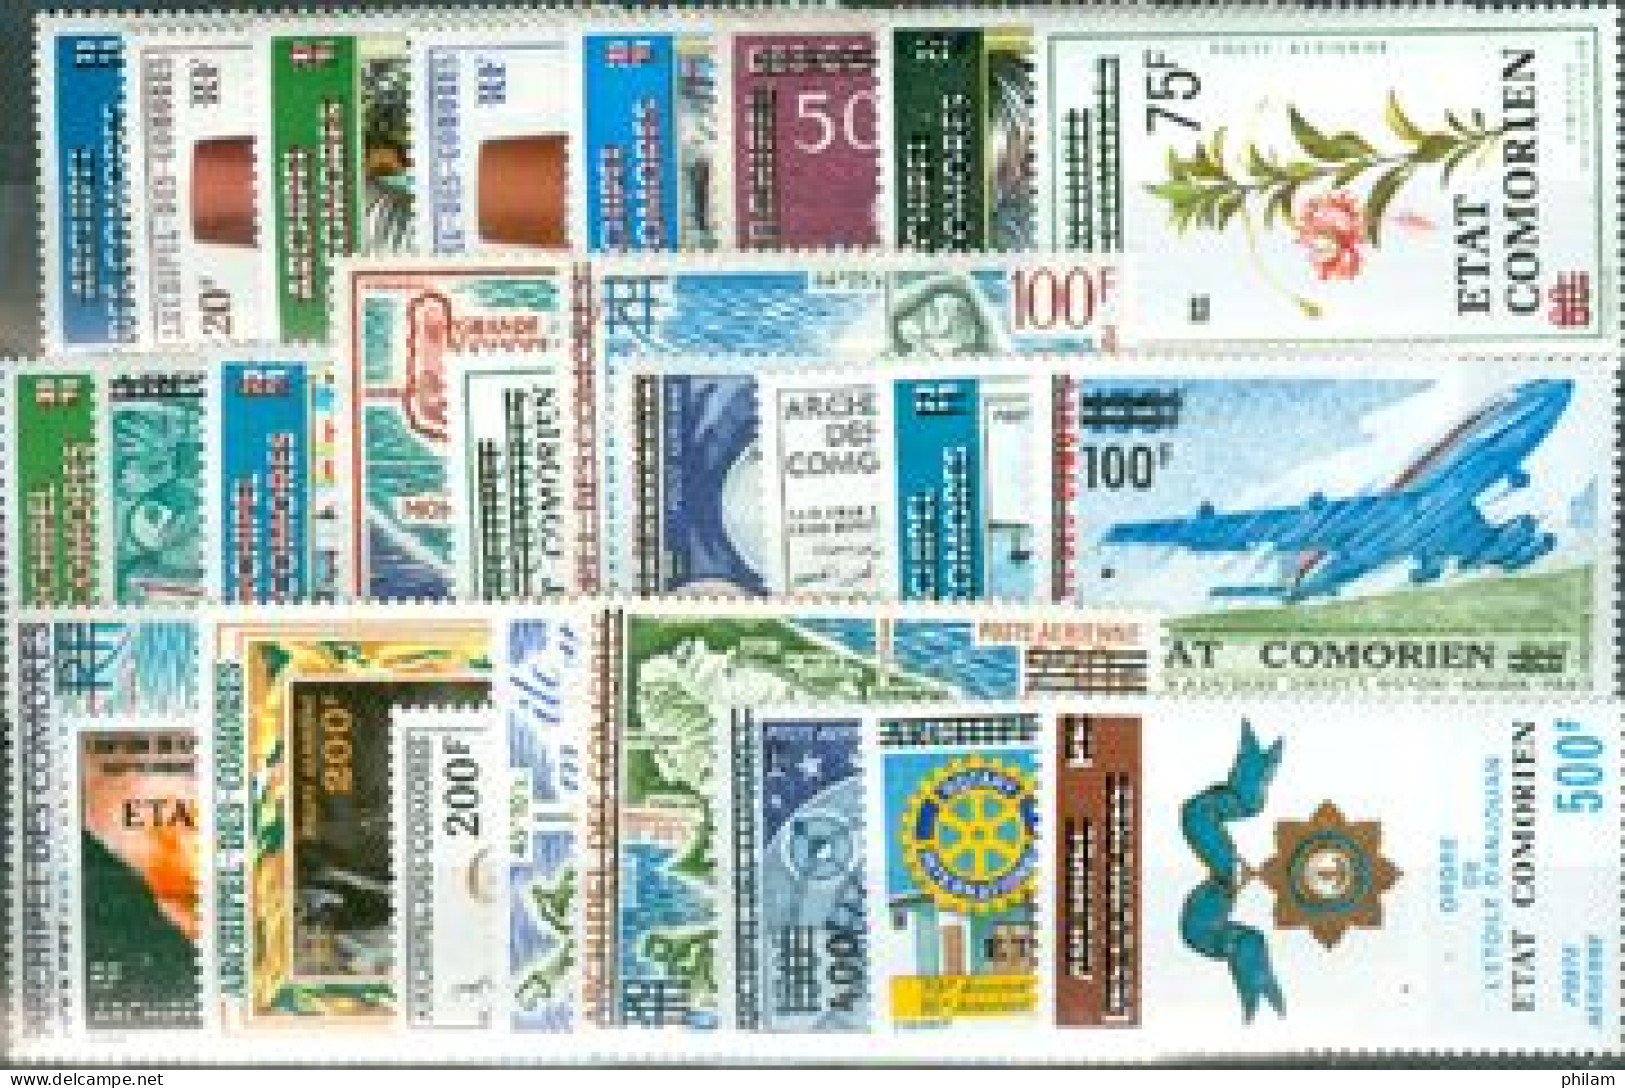 COMORES 1975 - Série Poste Aérienne Surchargée Etat Comorien - 26 V. - Isole Comore (1975-...)